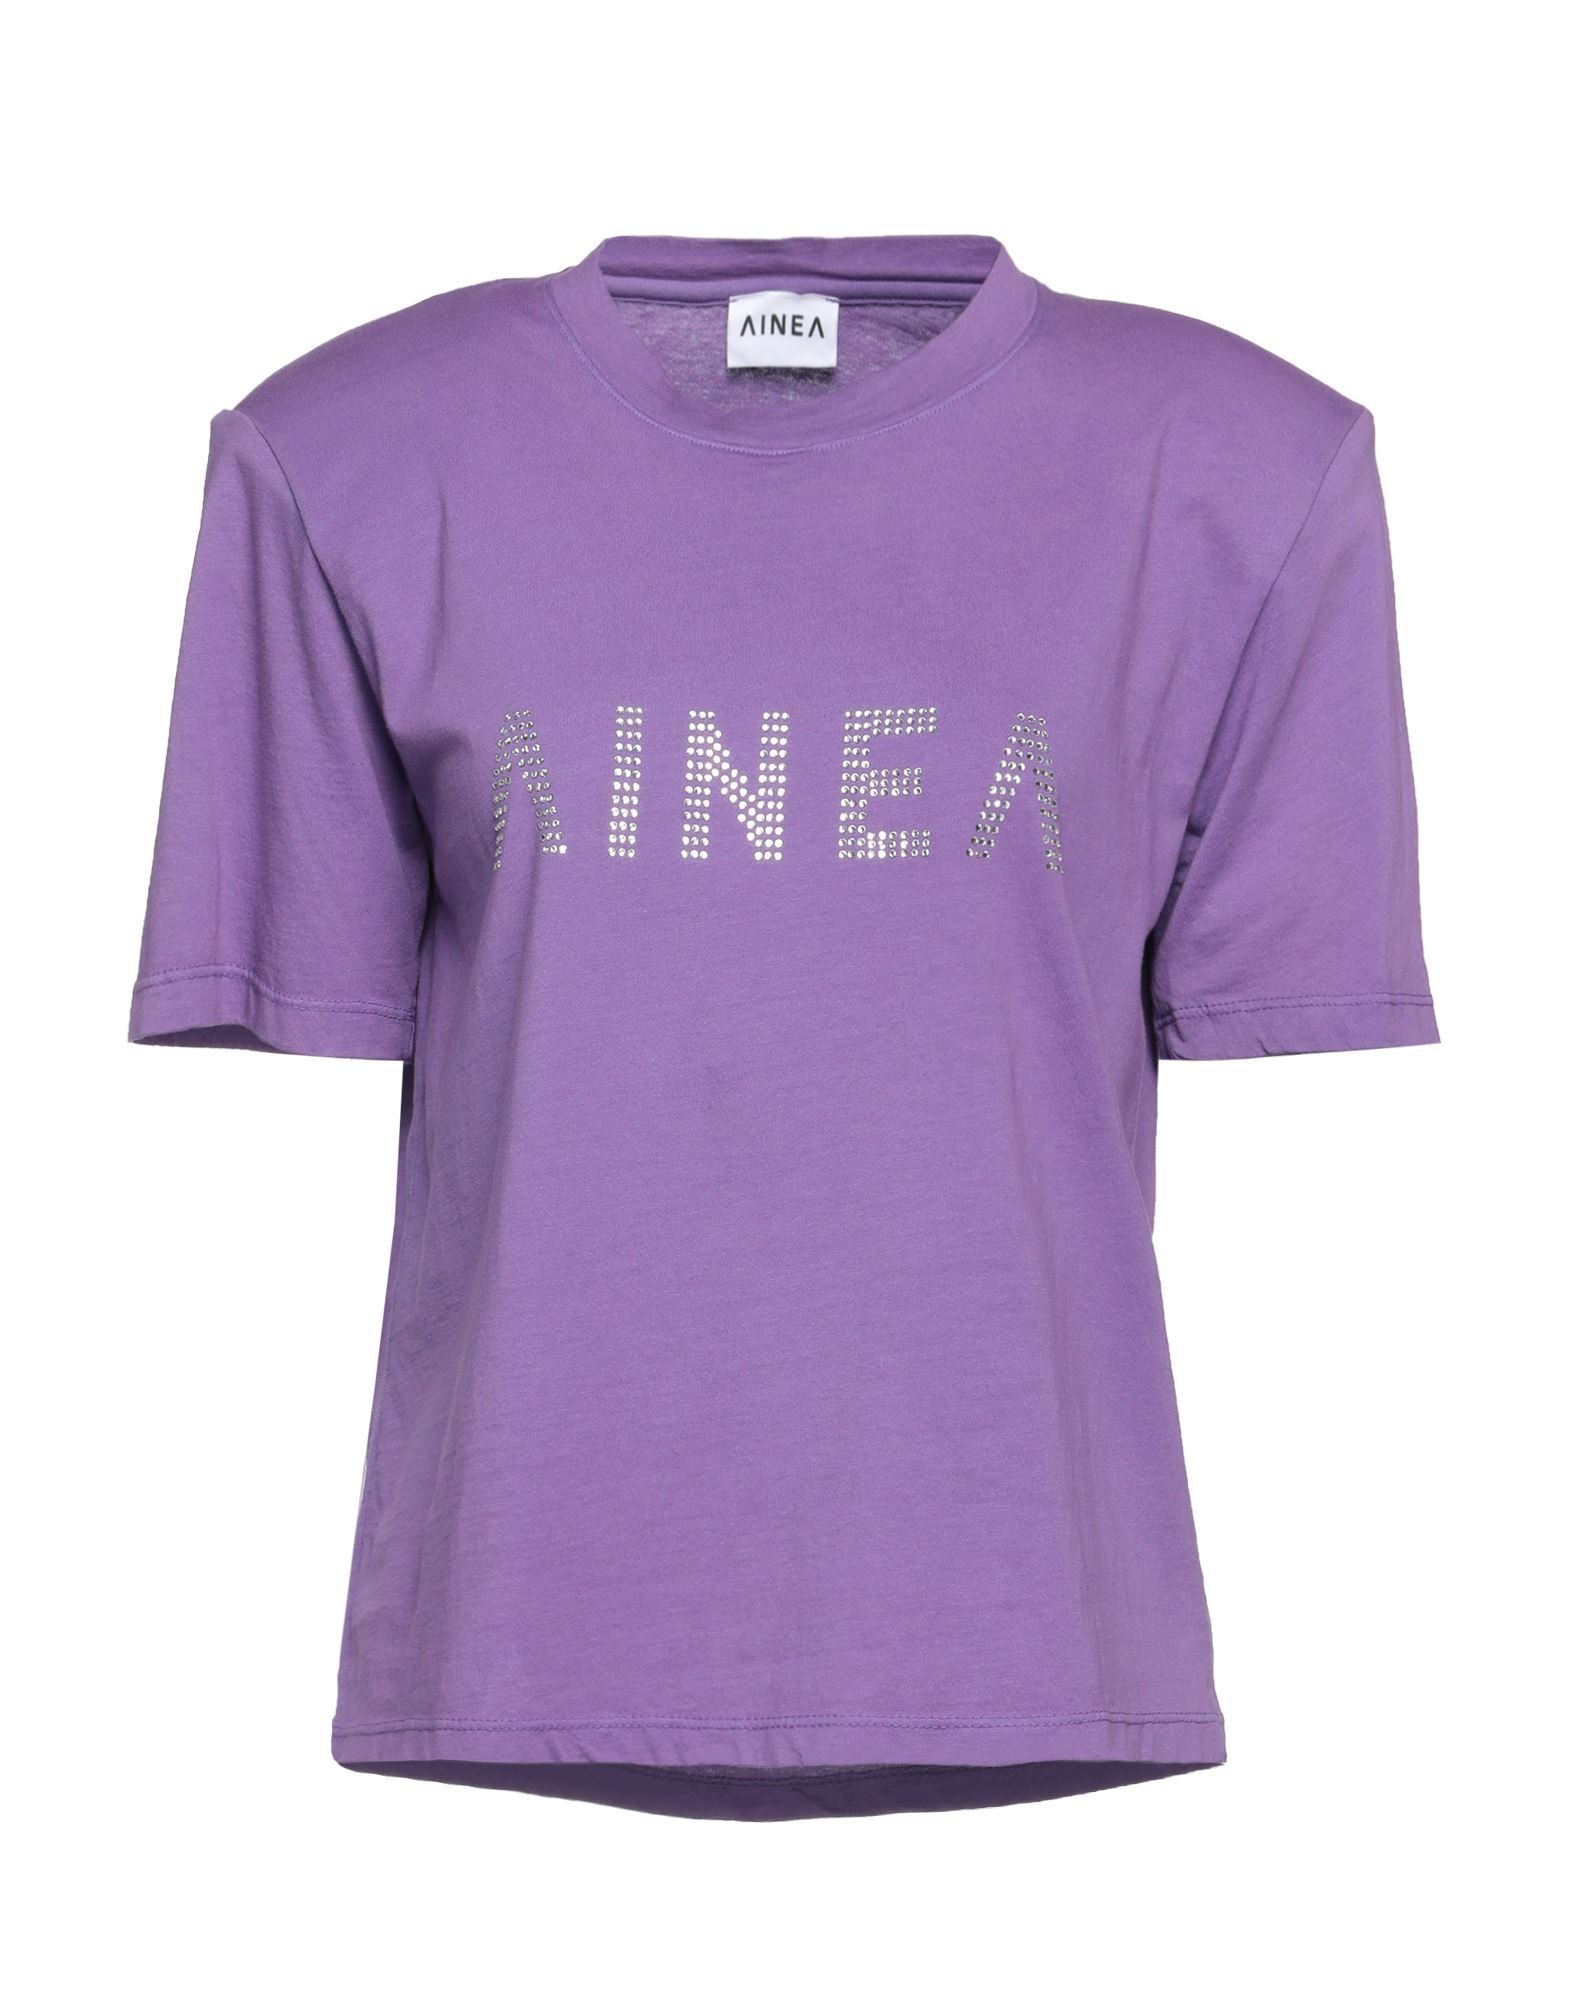 AINEA T-shirts Damen Violett von AINEA